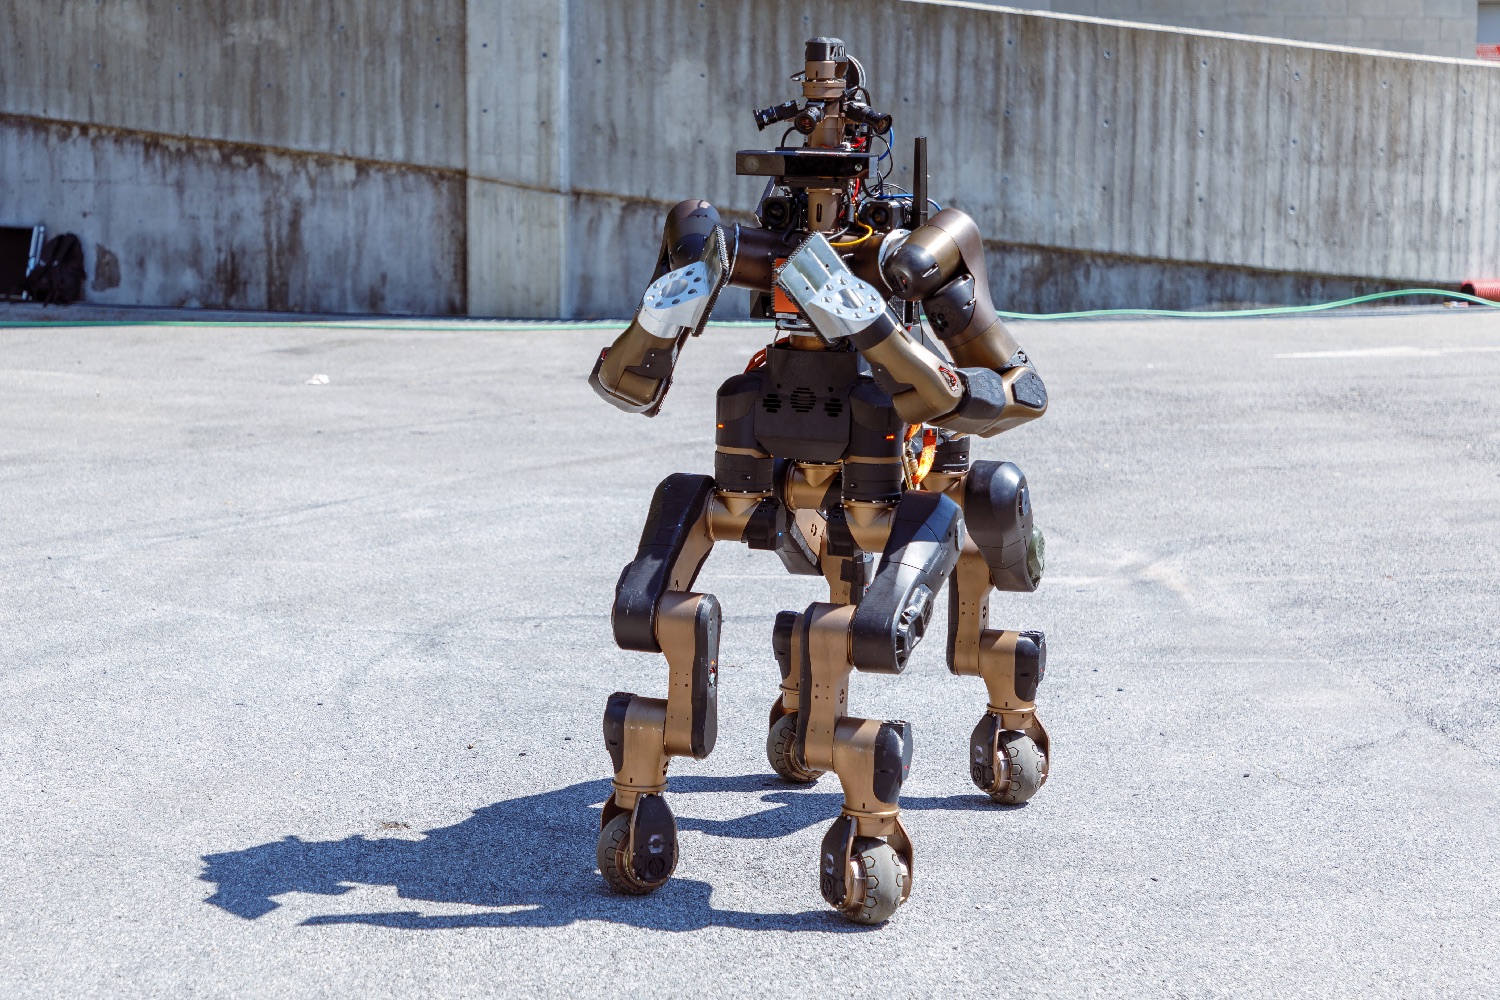 centauro robot rescue al morini 12283